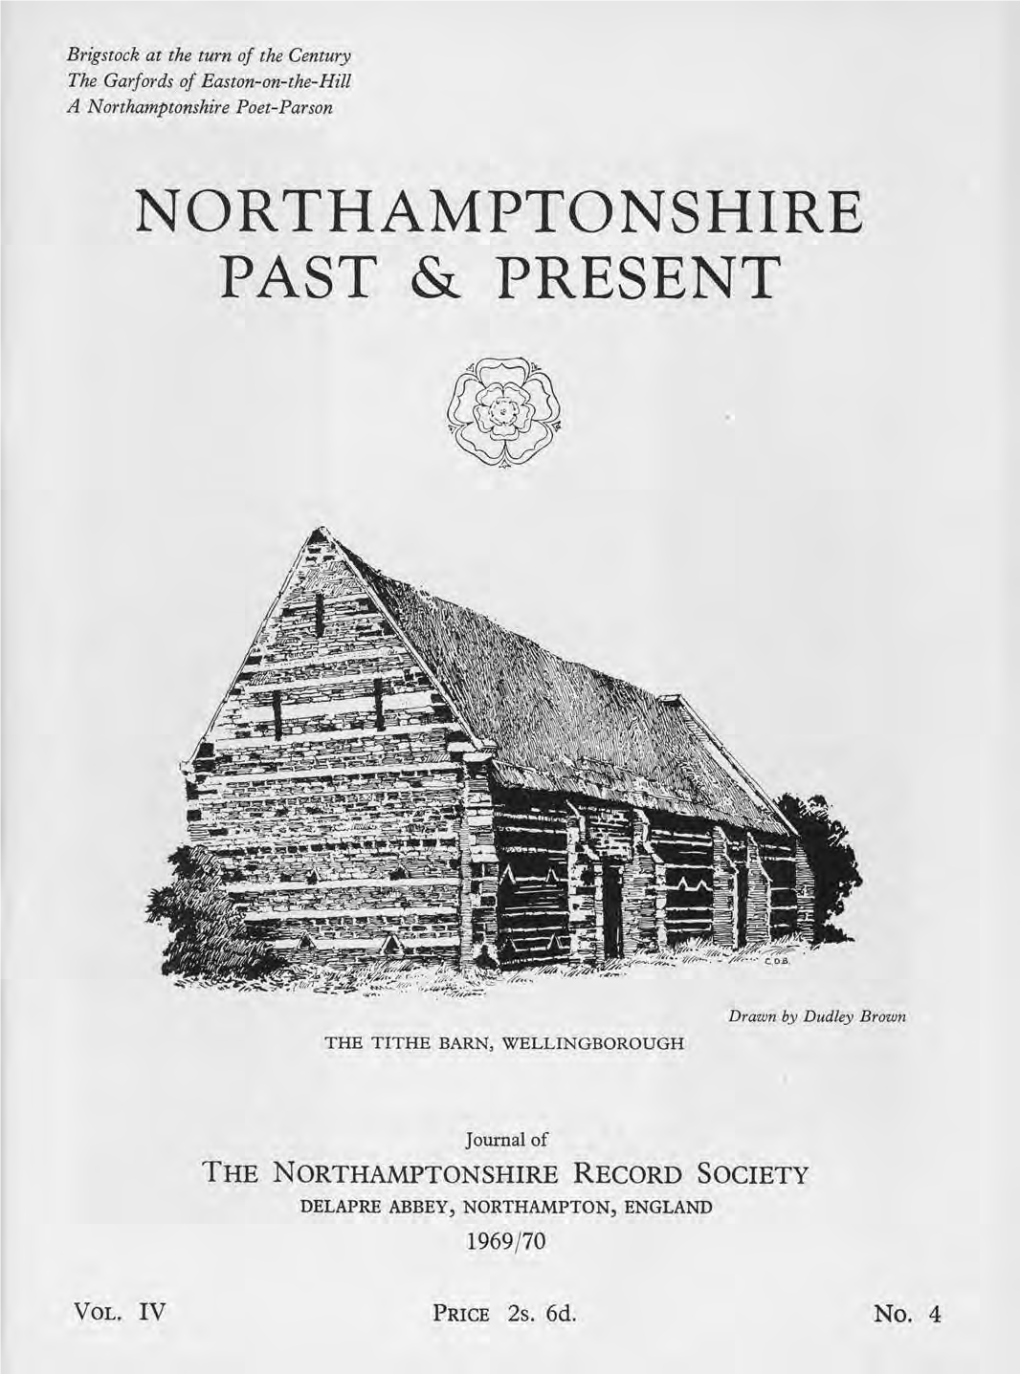 Northamptonshire Past & Present, Vol 4, No 4 (1969/70)